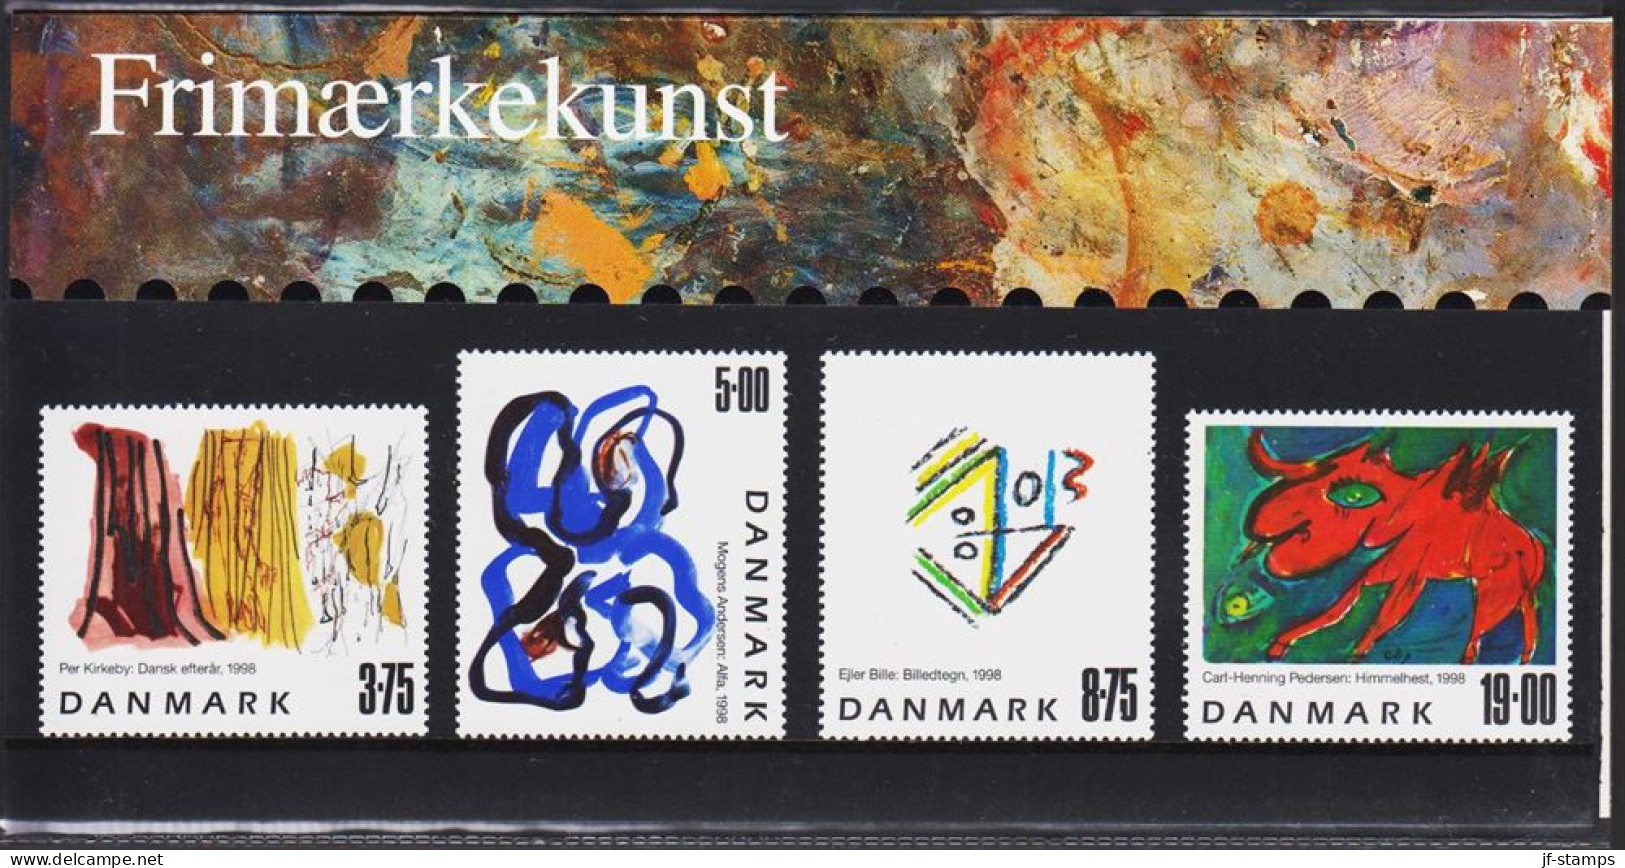 1998. DANMARK. Frimærkekunst (art) Complete Set In Official Folder (SM 31/1998) Never H... (Michel 1191-1194) - JF544451 - Unused Stamps